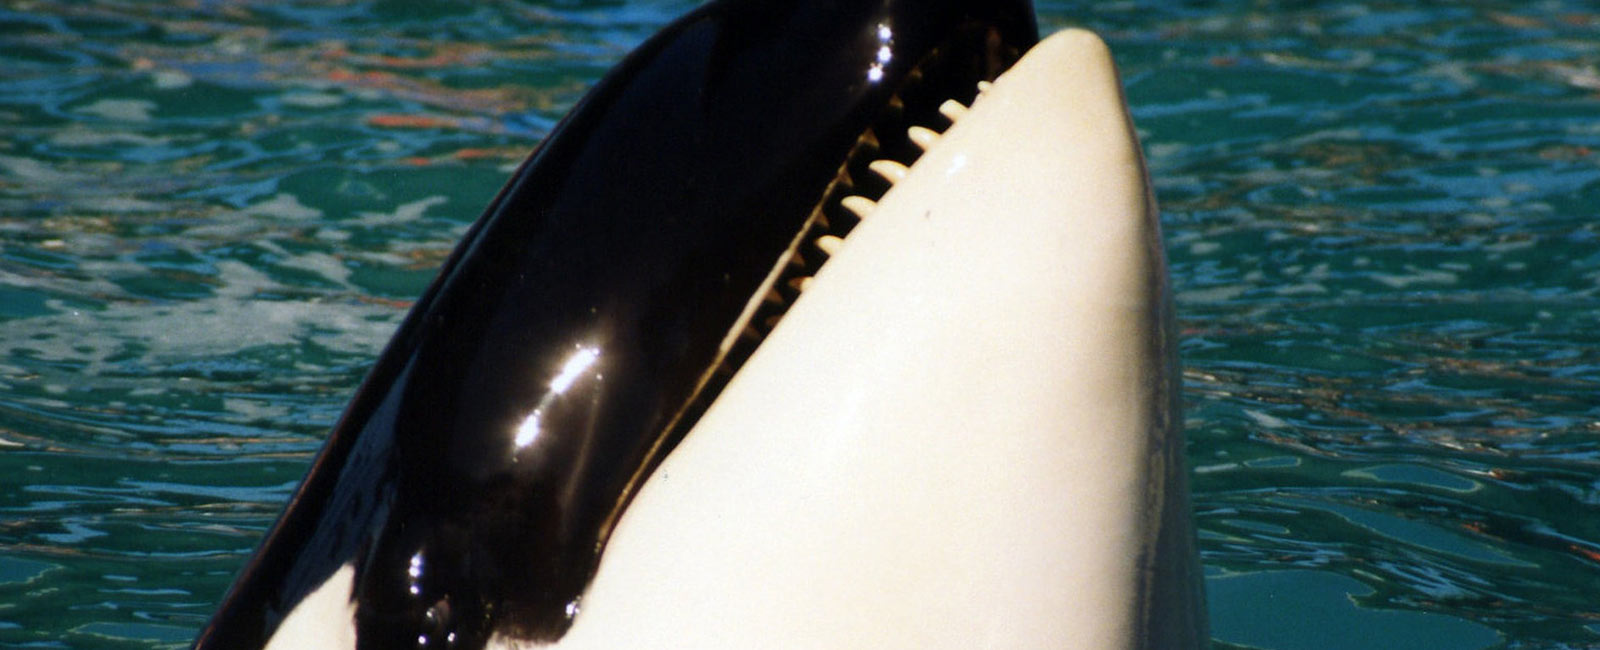 TUI unterstützt Tierquälerei in Orca-Zoos – das könnt ihr dagegen tun!